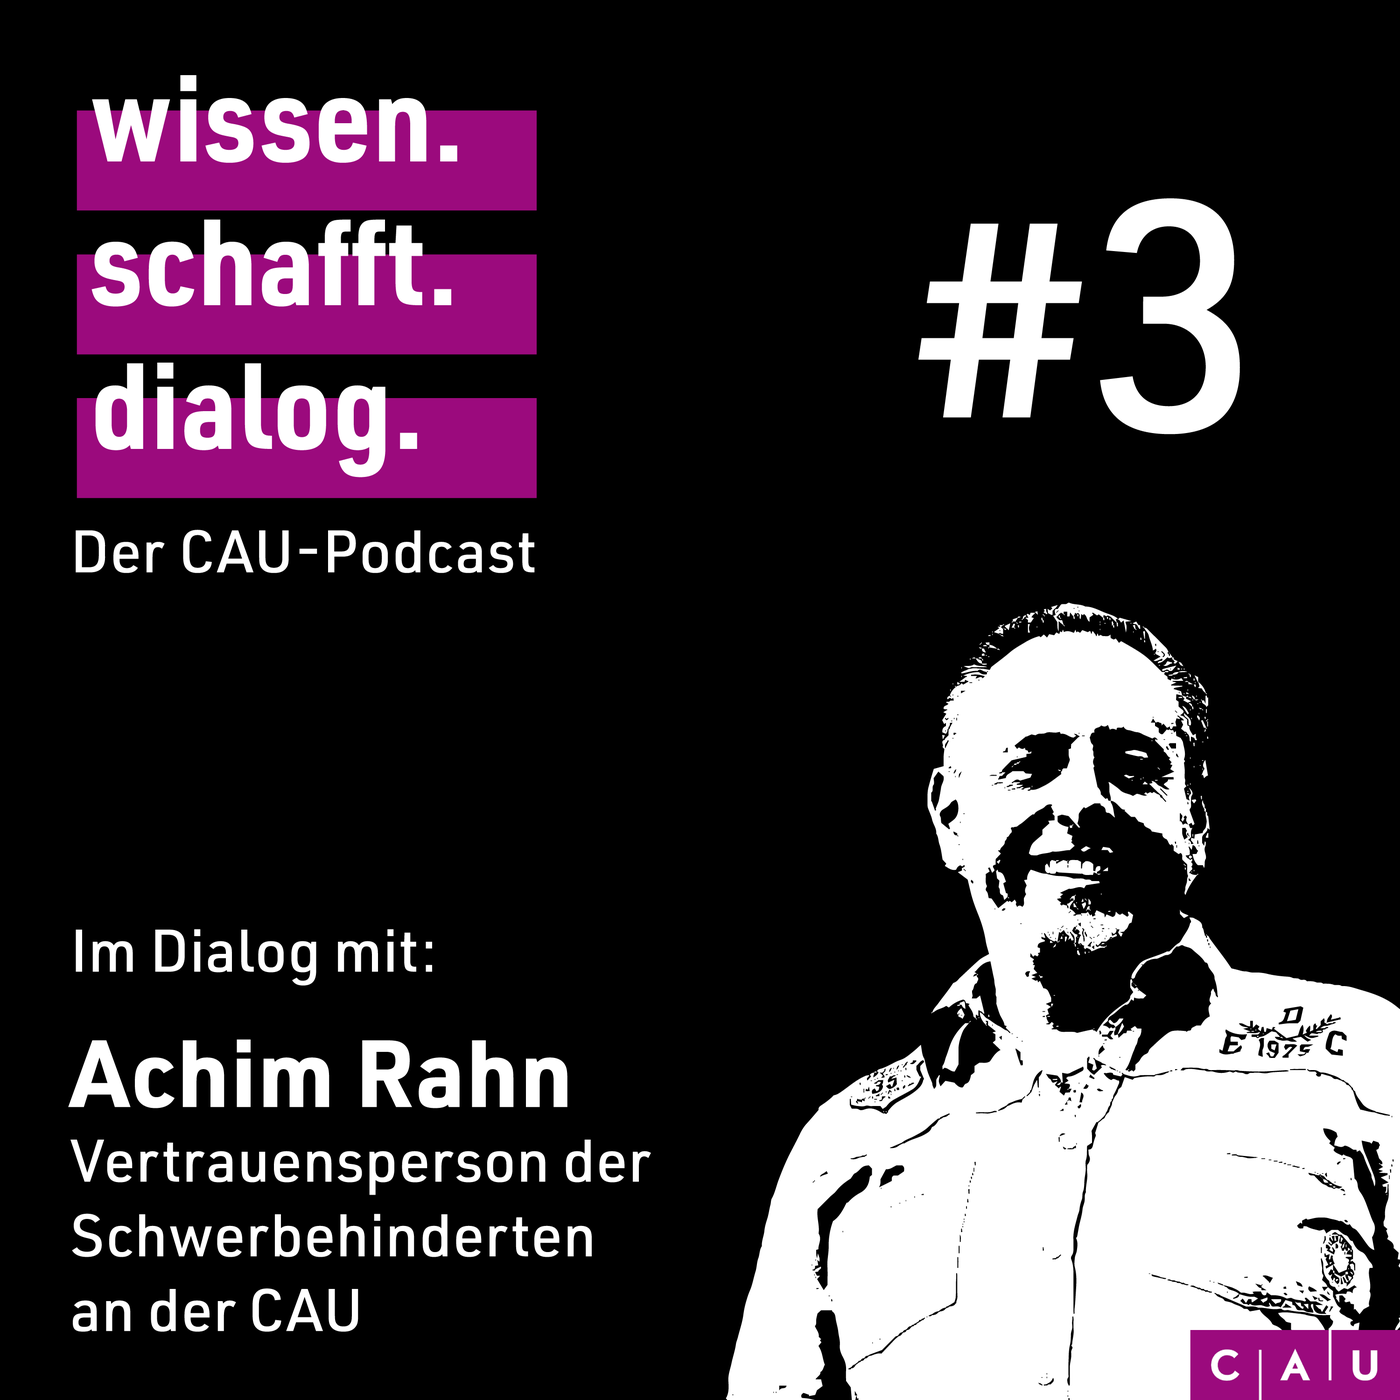 Im Dialog mit: Achim Rahn